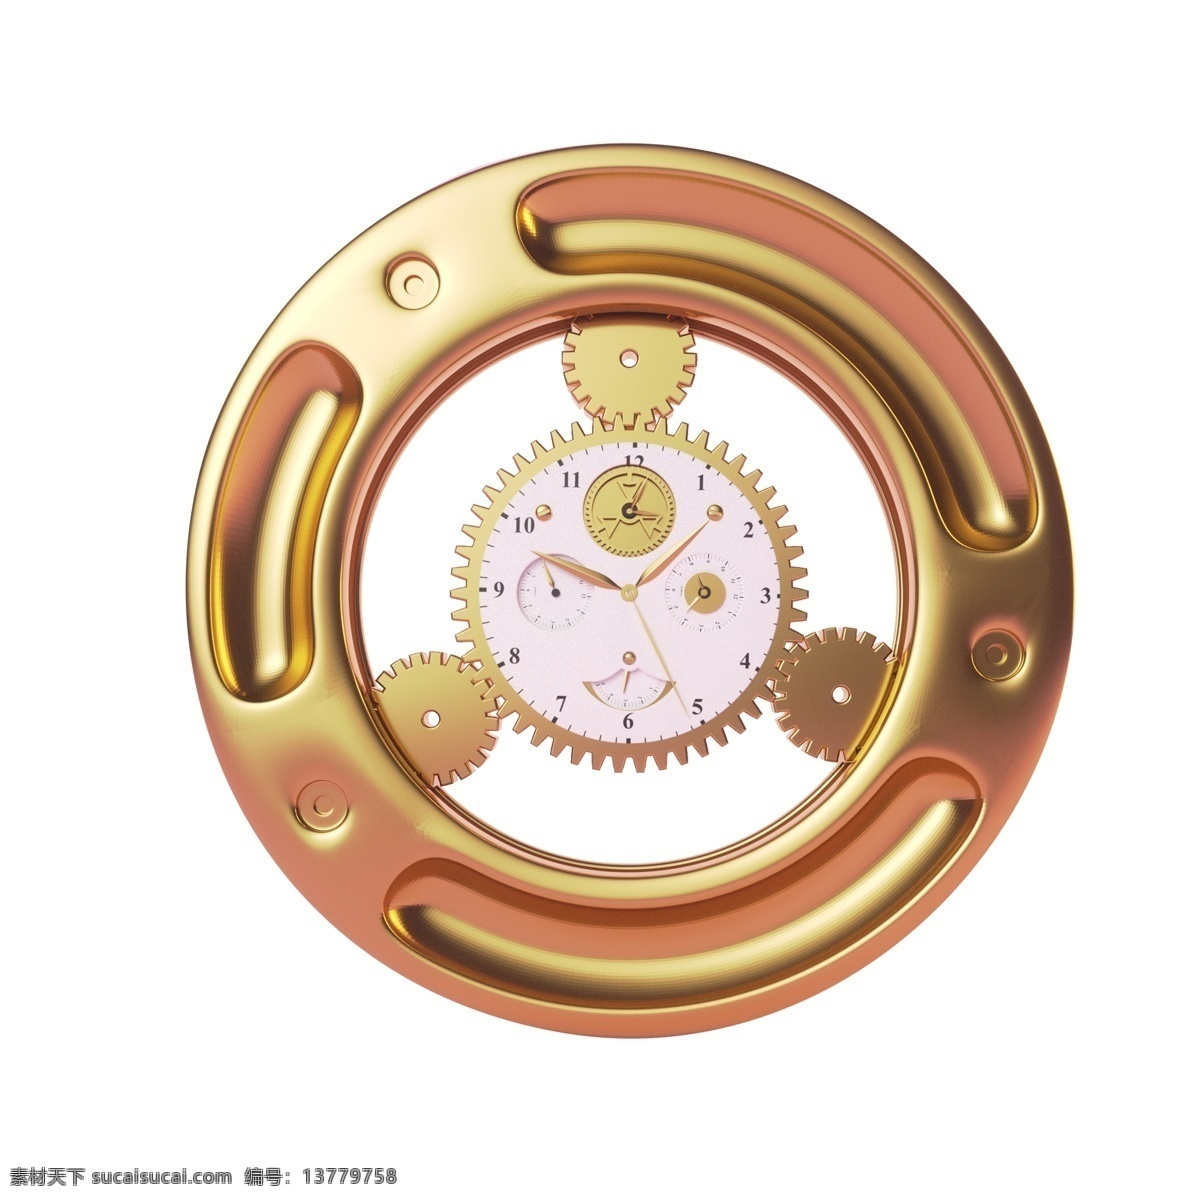 金色 光泽 圆环 真实 元素 质感 环绕 电商 纹理 齿轮 旋转 指针 科技 打折 金属质感